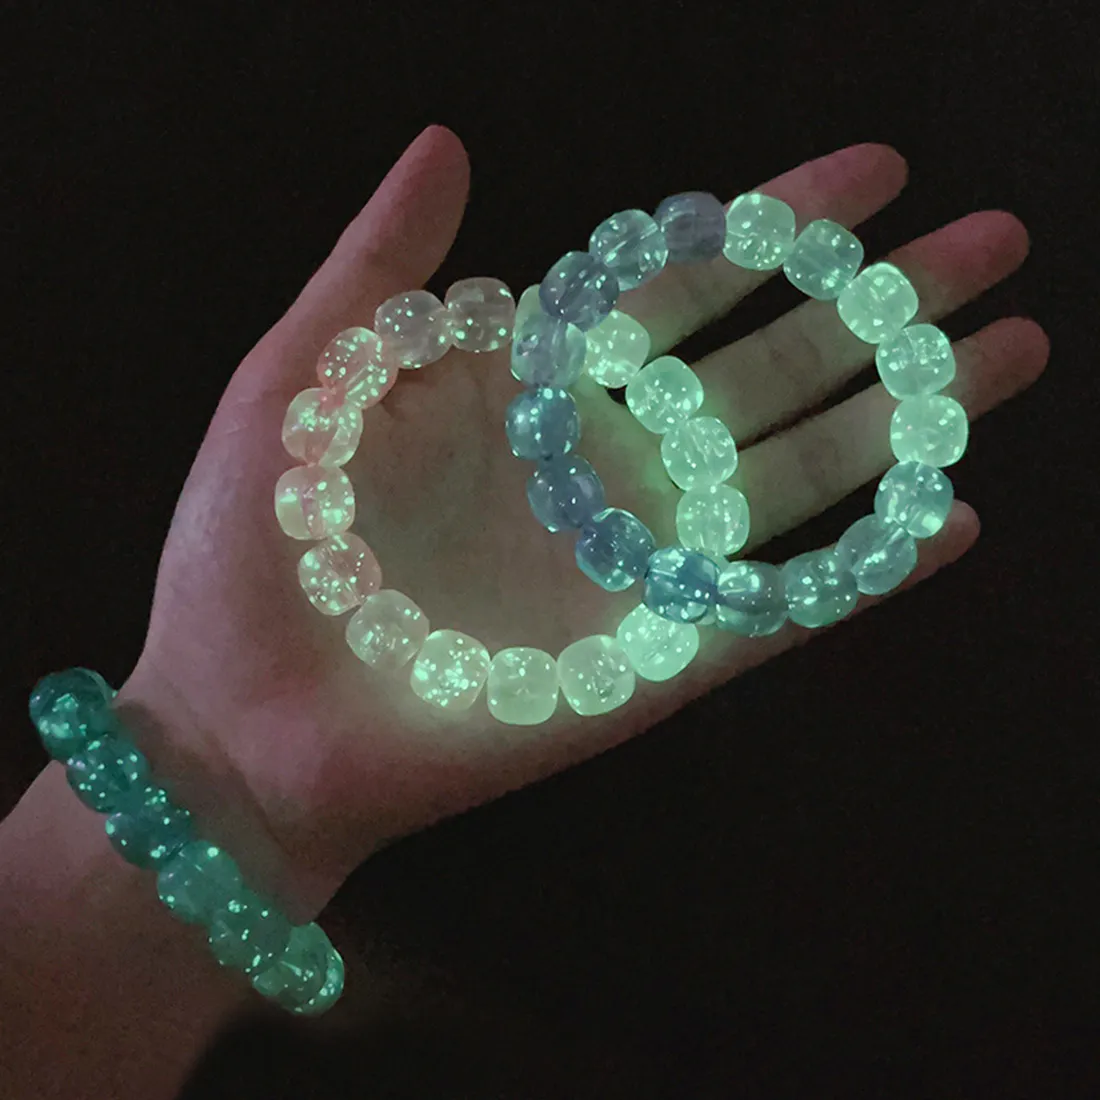 Luorescent natural stone bracelet night light glowing beads bangle fashion jewelry thumb155 crop